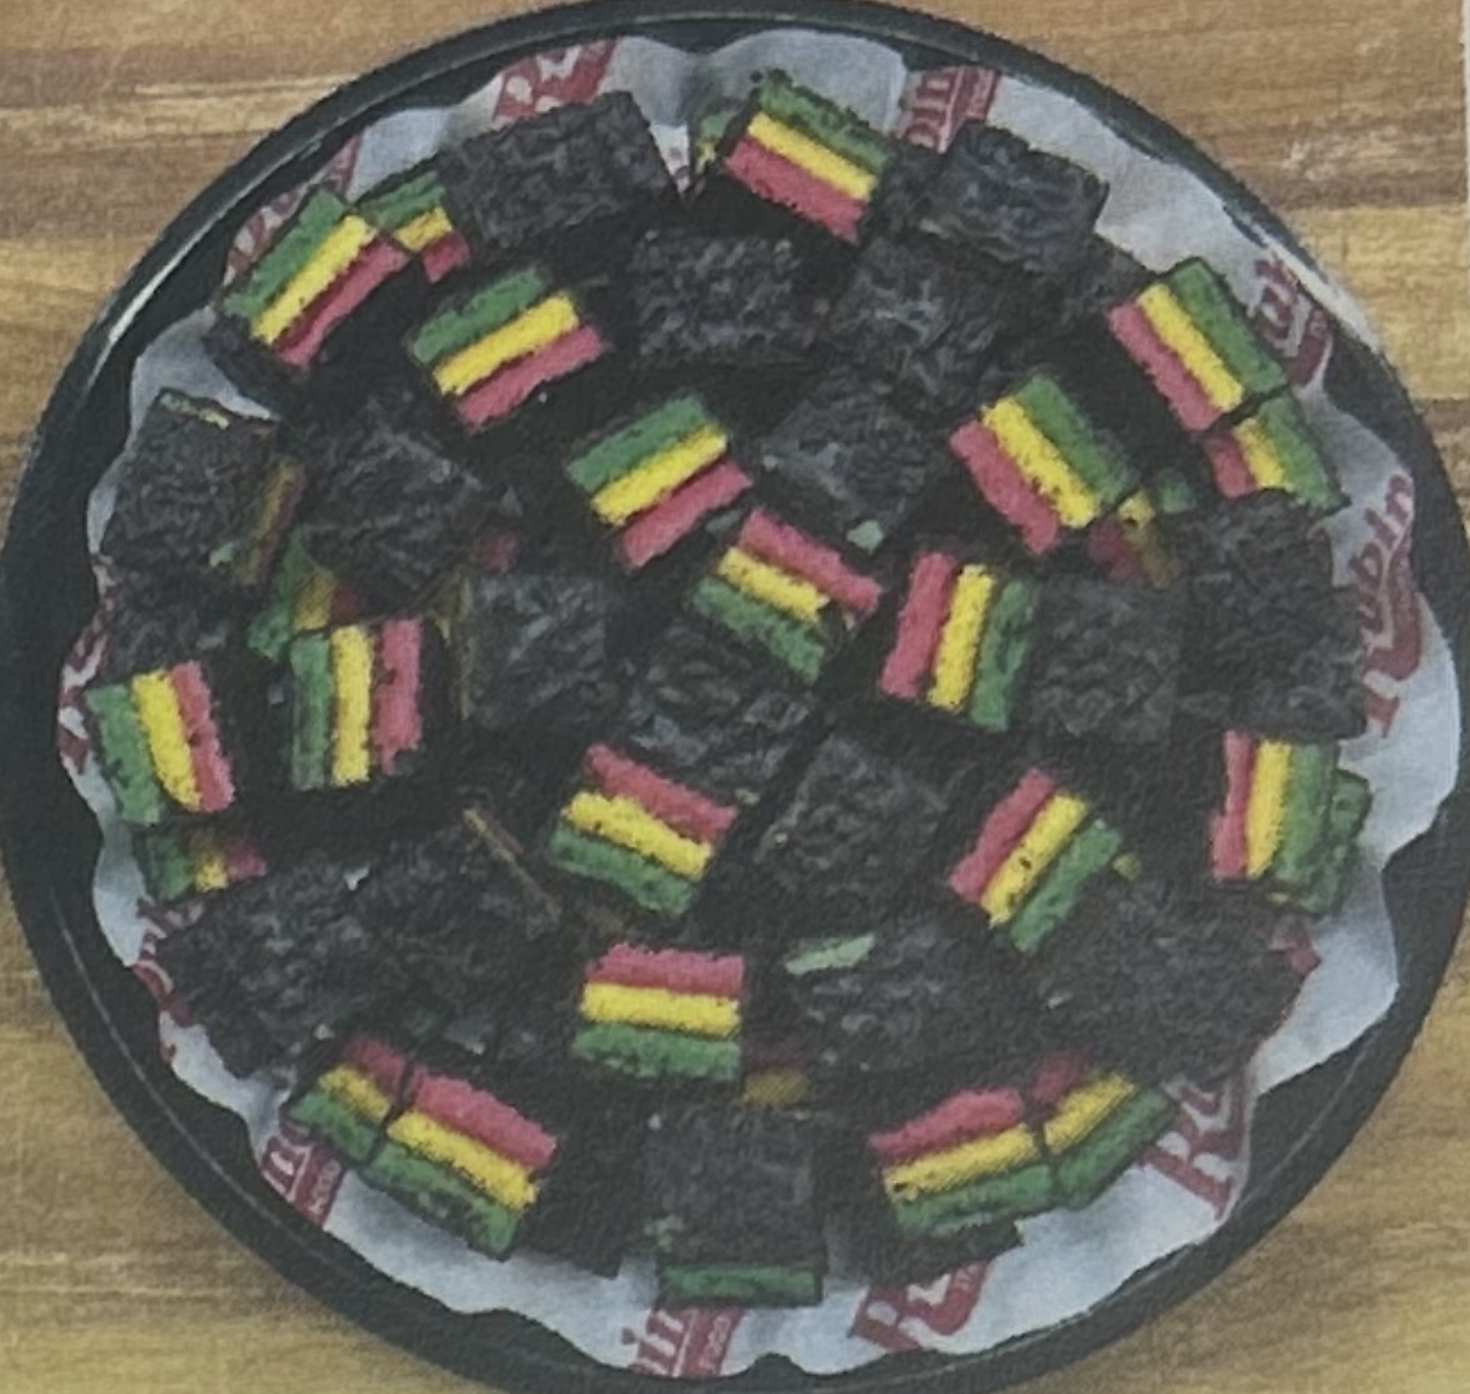  Rainbow Layer Cakebite Tray serves 25-30 